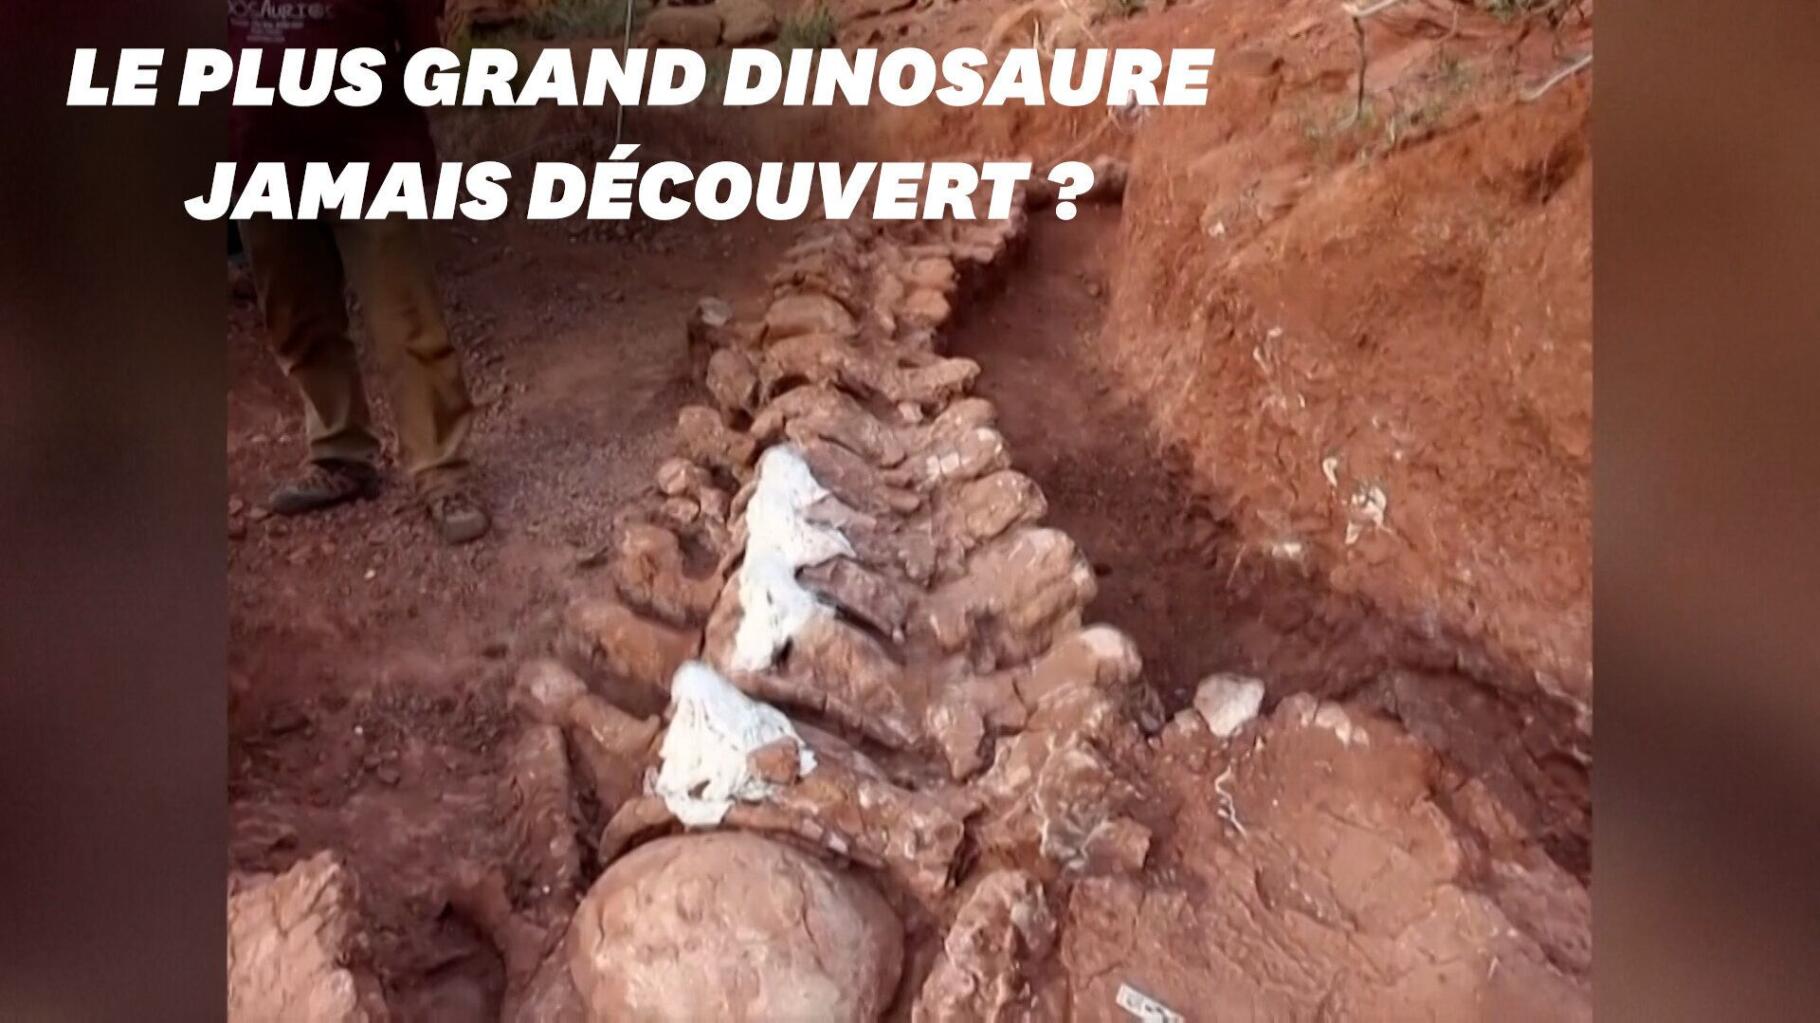 Incroyable ! Il découvre un squelette de dinosaure géant dans son jardin !